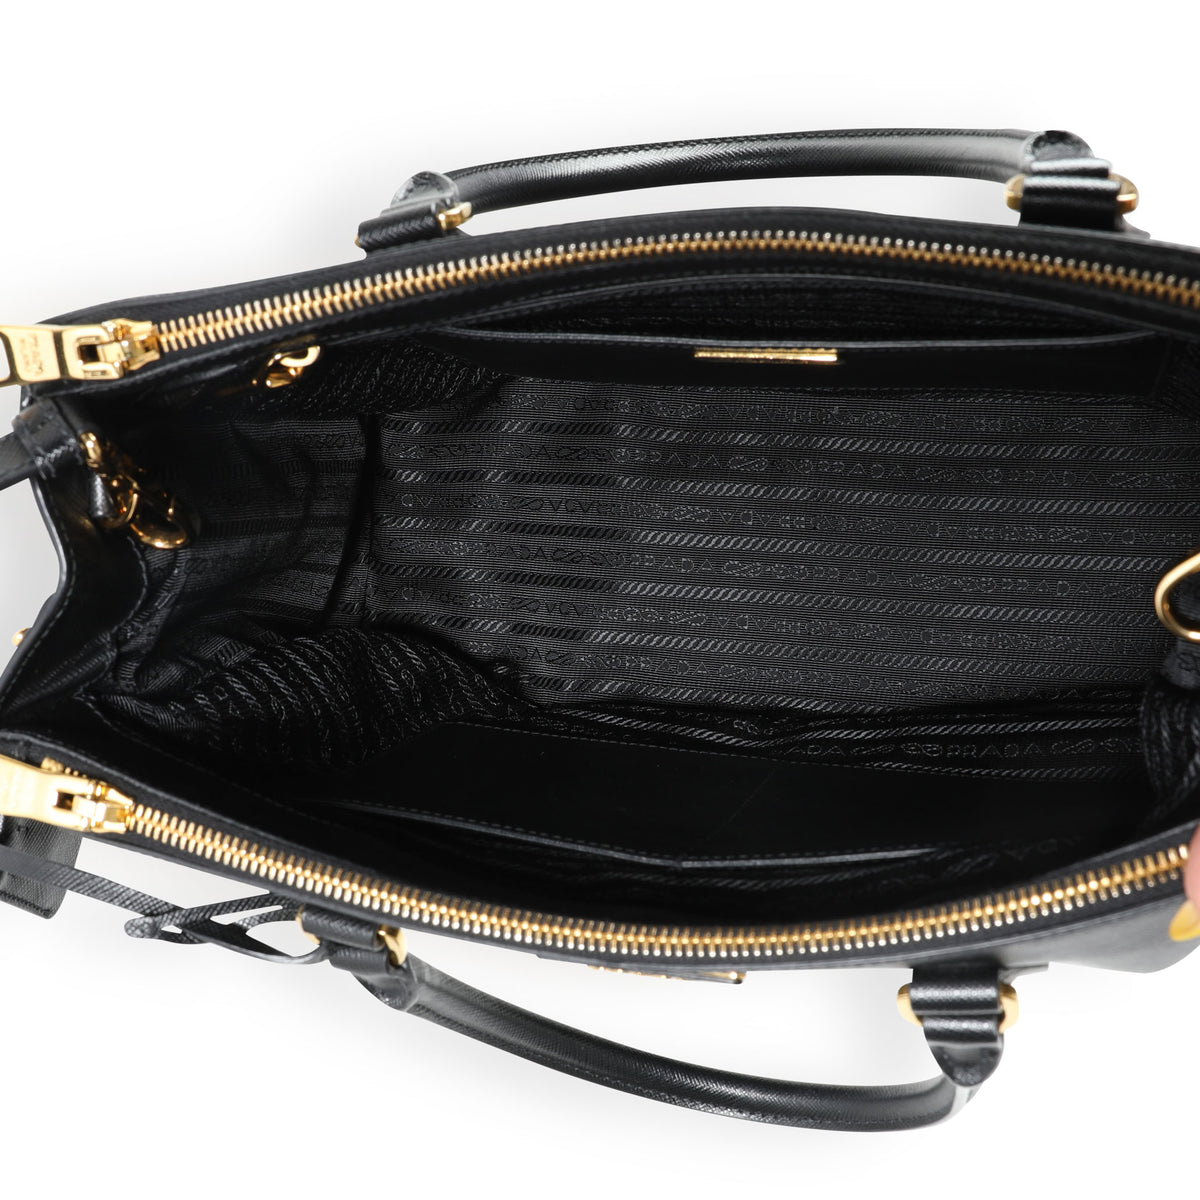 Large Saffiano Leather Prada Galleria Bag in BLACK